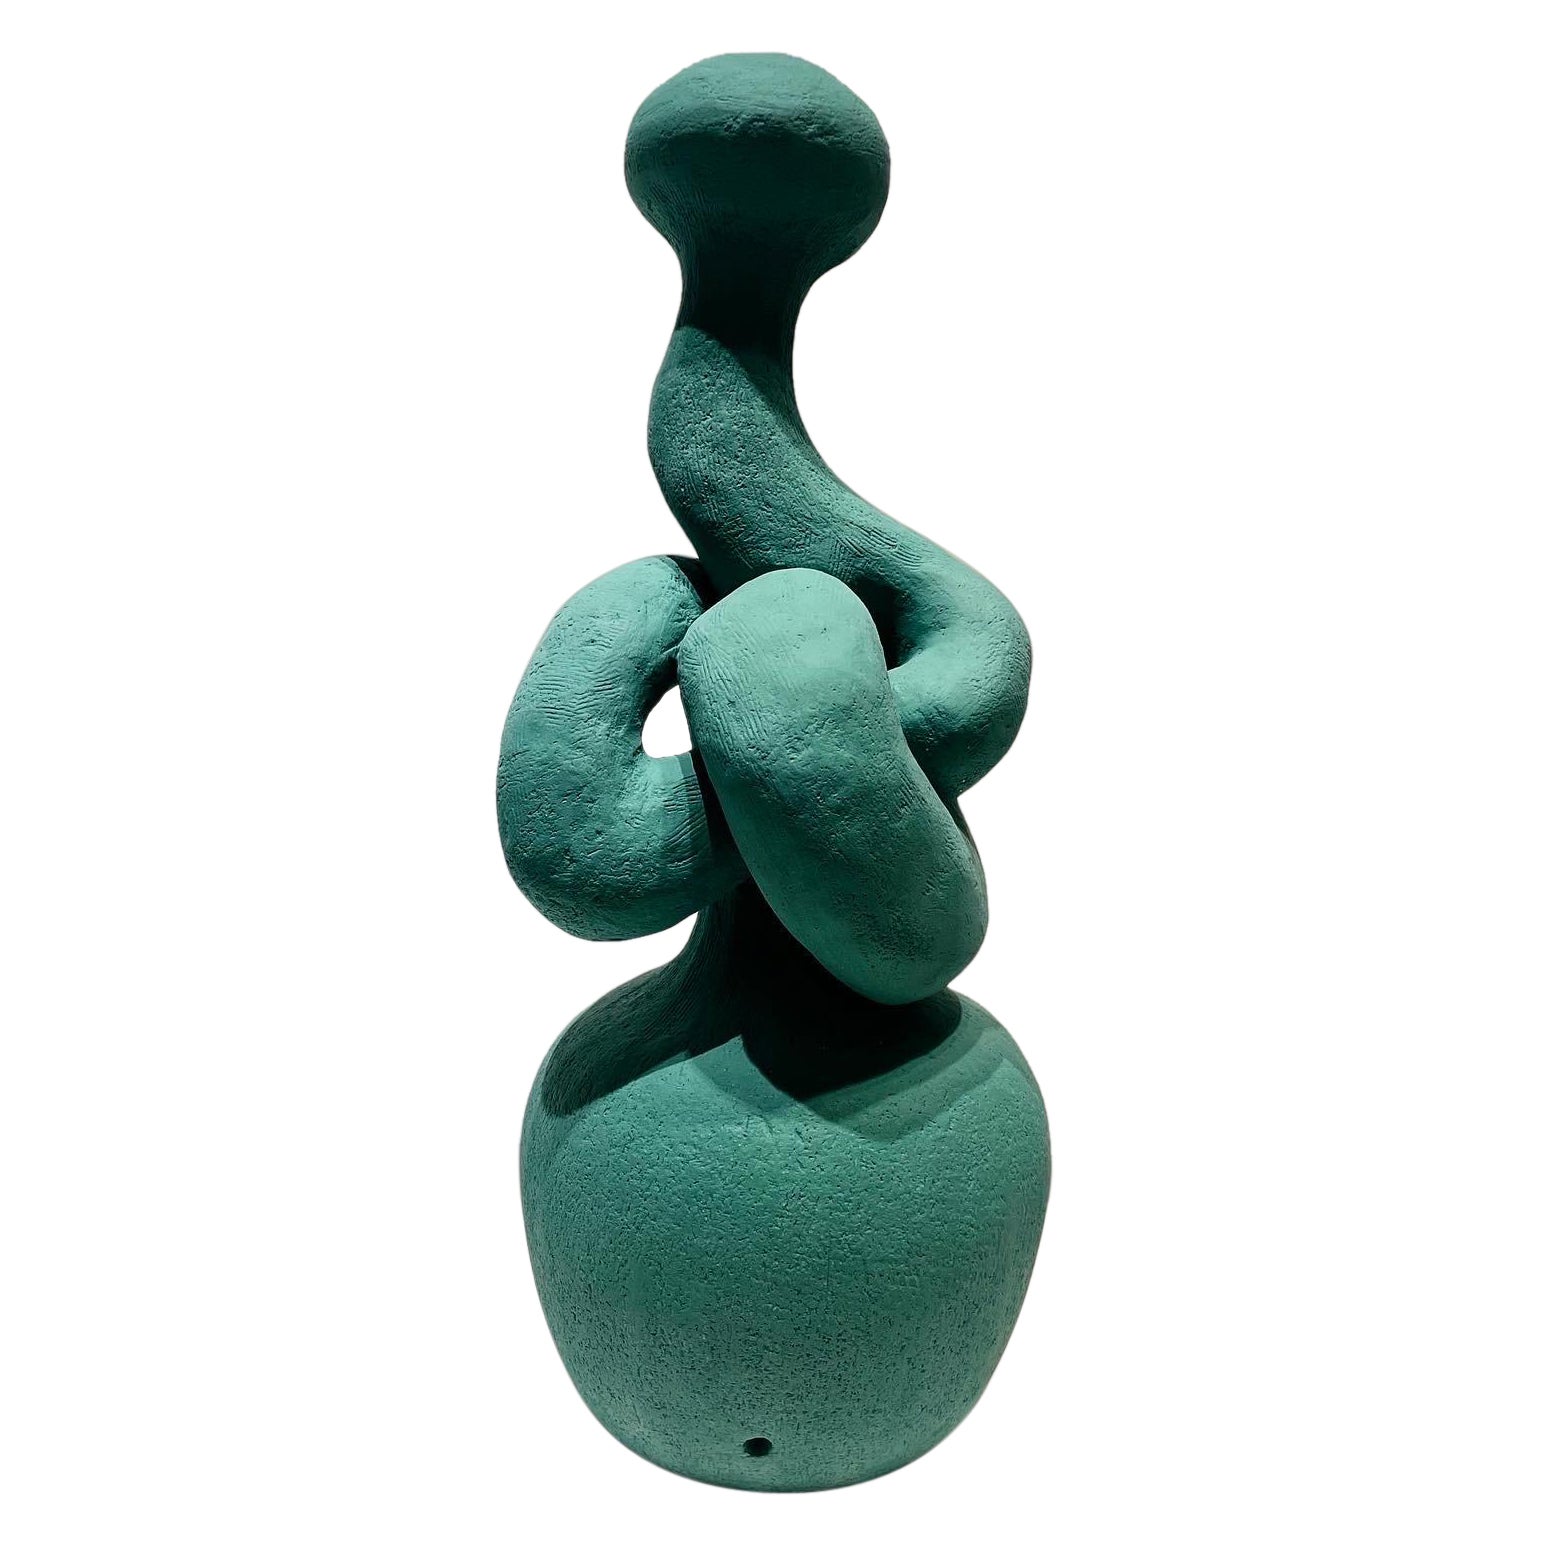 Sculpture de table ou lampe à nœuds, en vert d'hiver, fabriquée à la main par l'artiste Stef Duffy